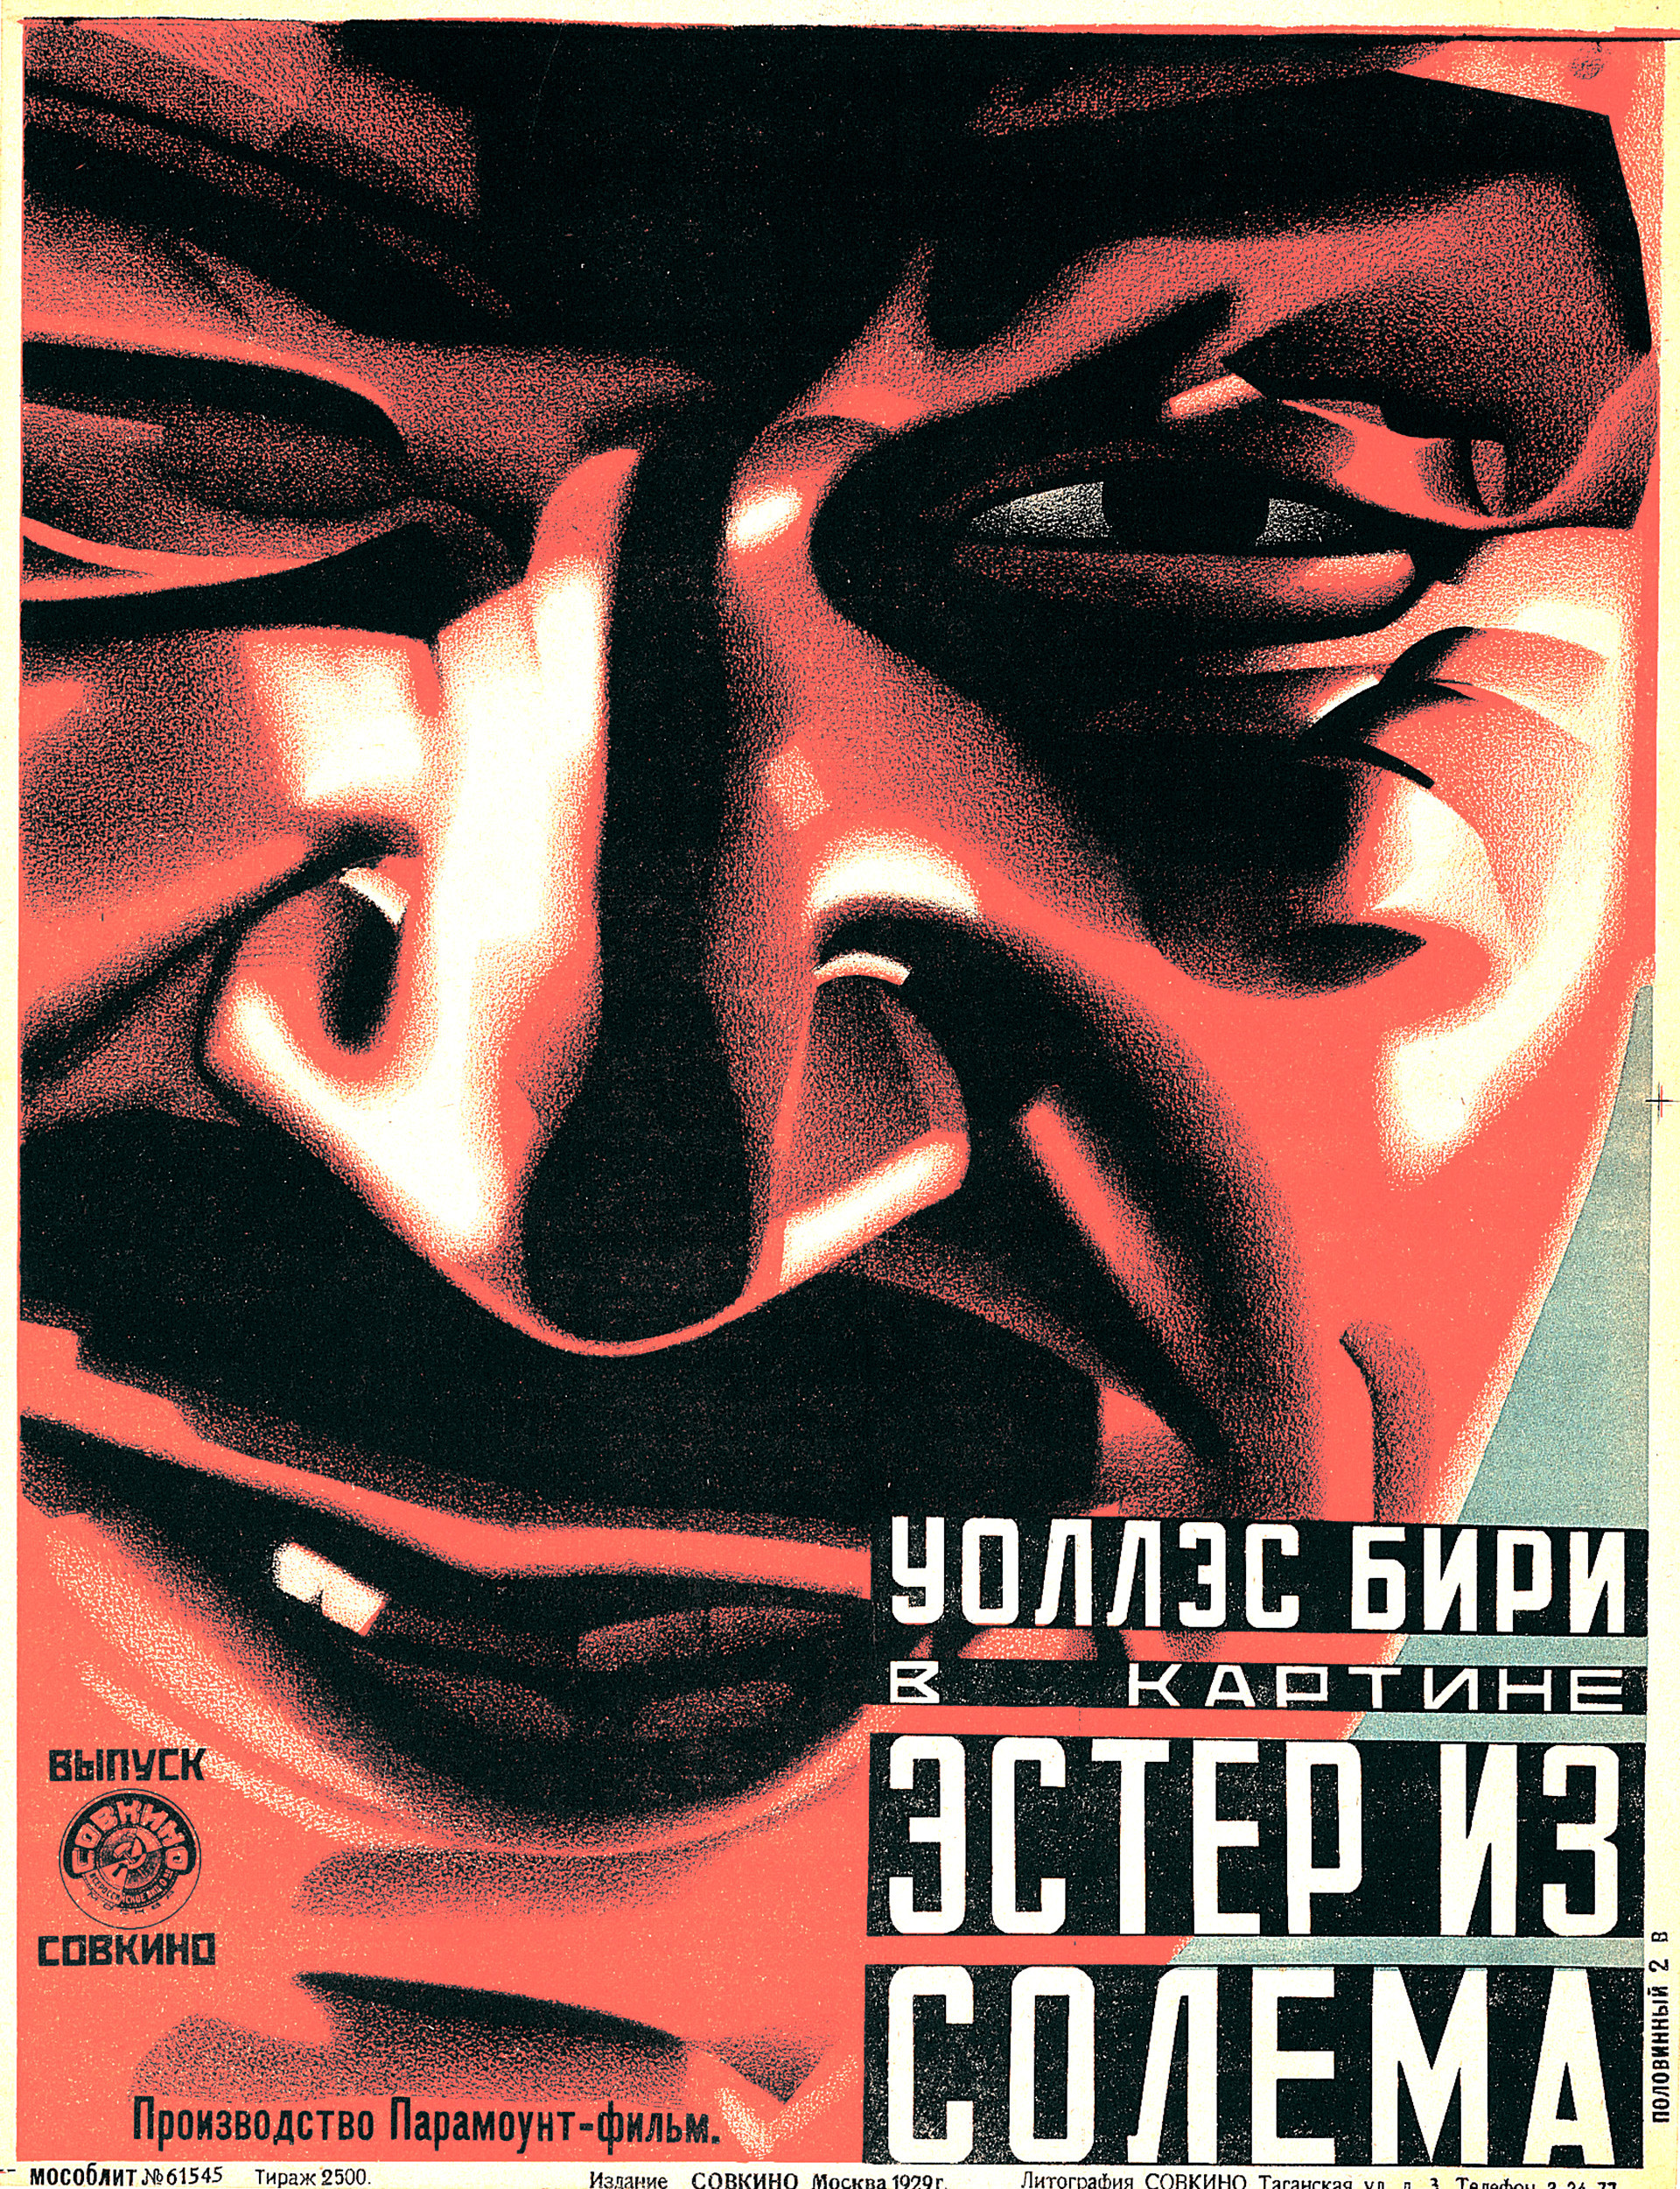 Anonimo, poster cinematografico di Ester iz Solema, 1929